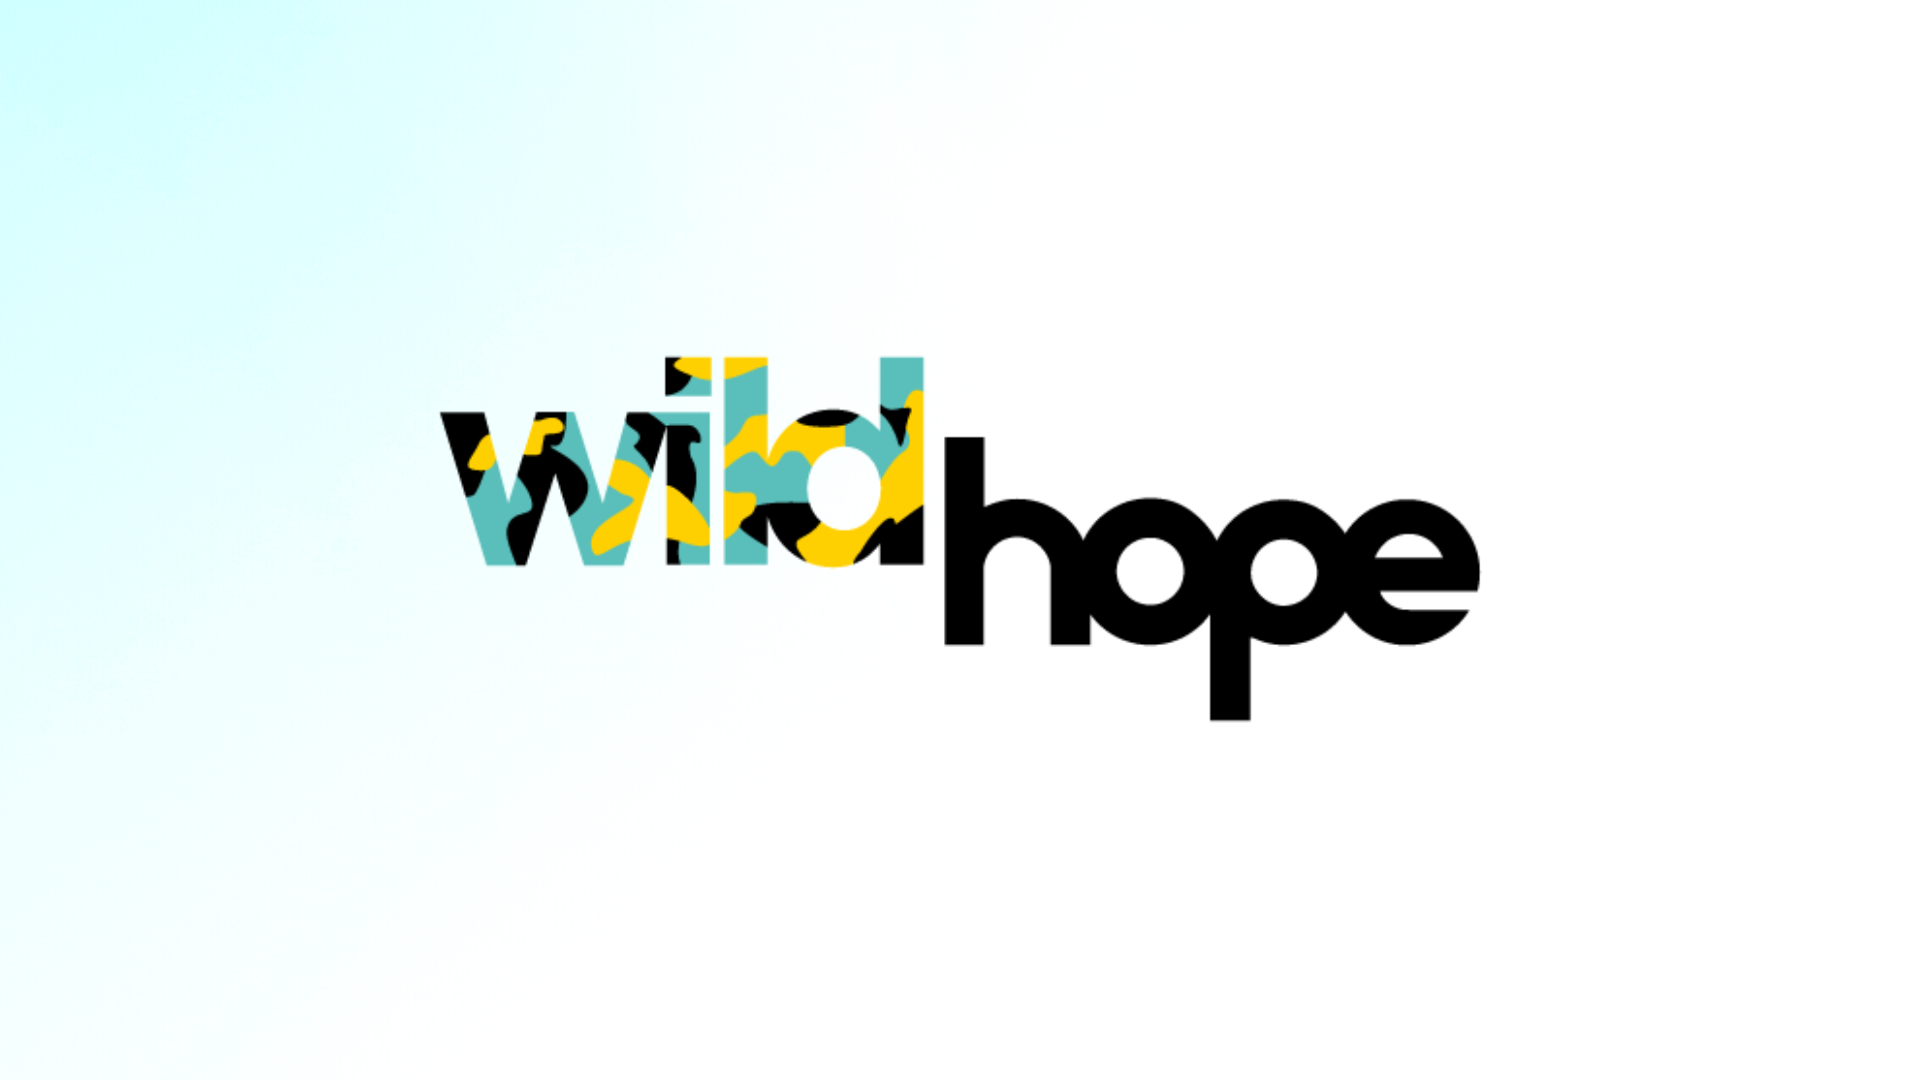 Wild Hope 2023 (1920 × 1080 px